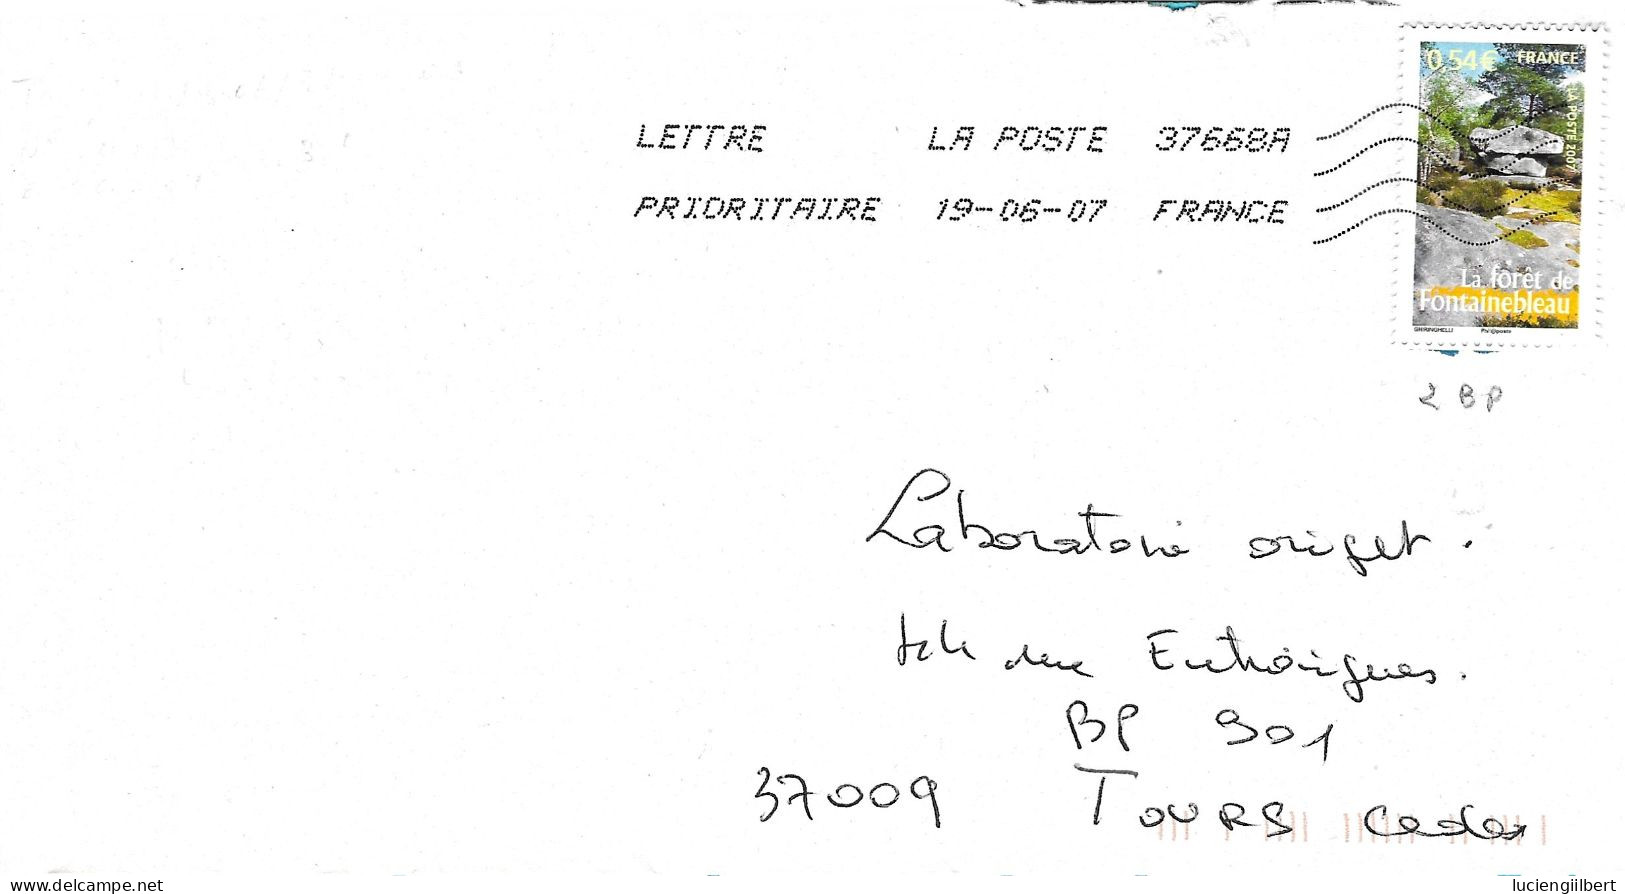 TIMBRE N° 4016   -  LA FORET DE FONTAINEBLEAU     - TARIF DU 1 10 06 AU 28 2 08  -  SEUL SUR LETTRE - 2007 - Tarifs Postaux